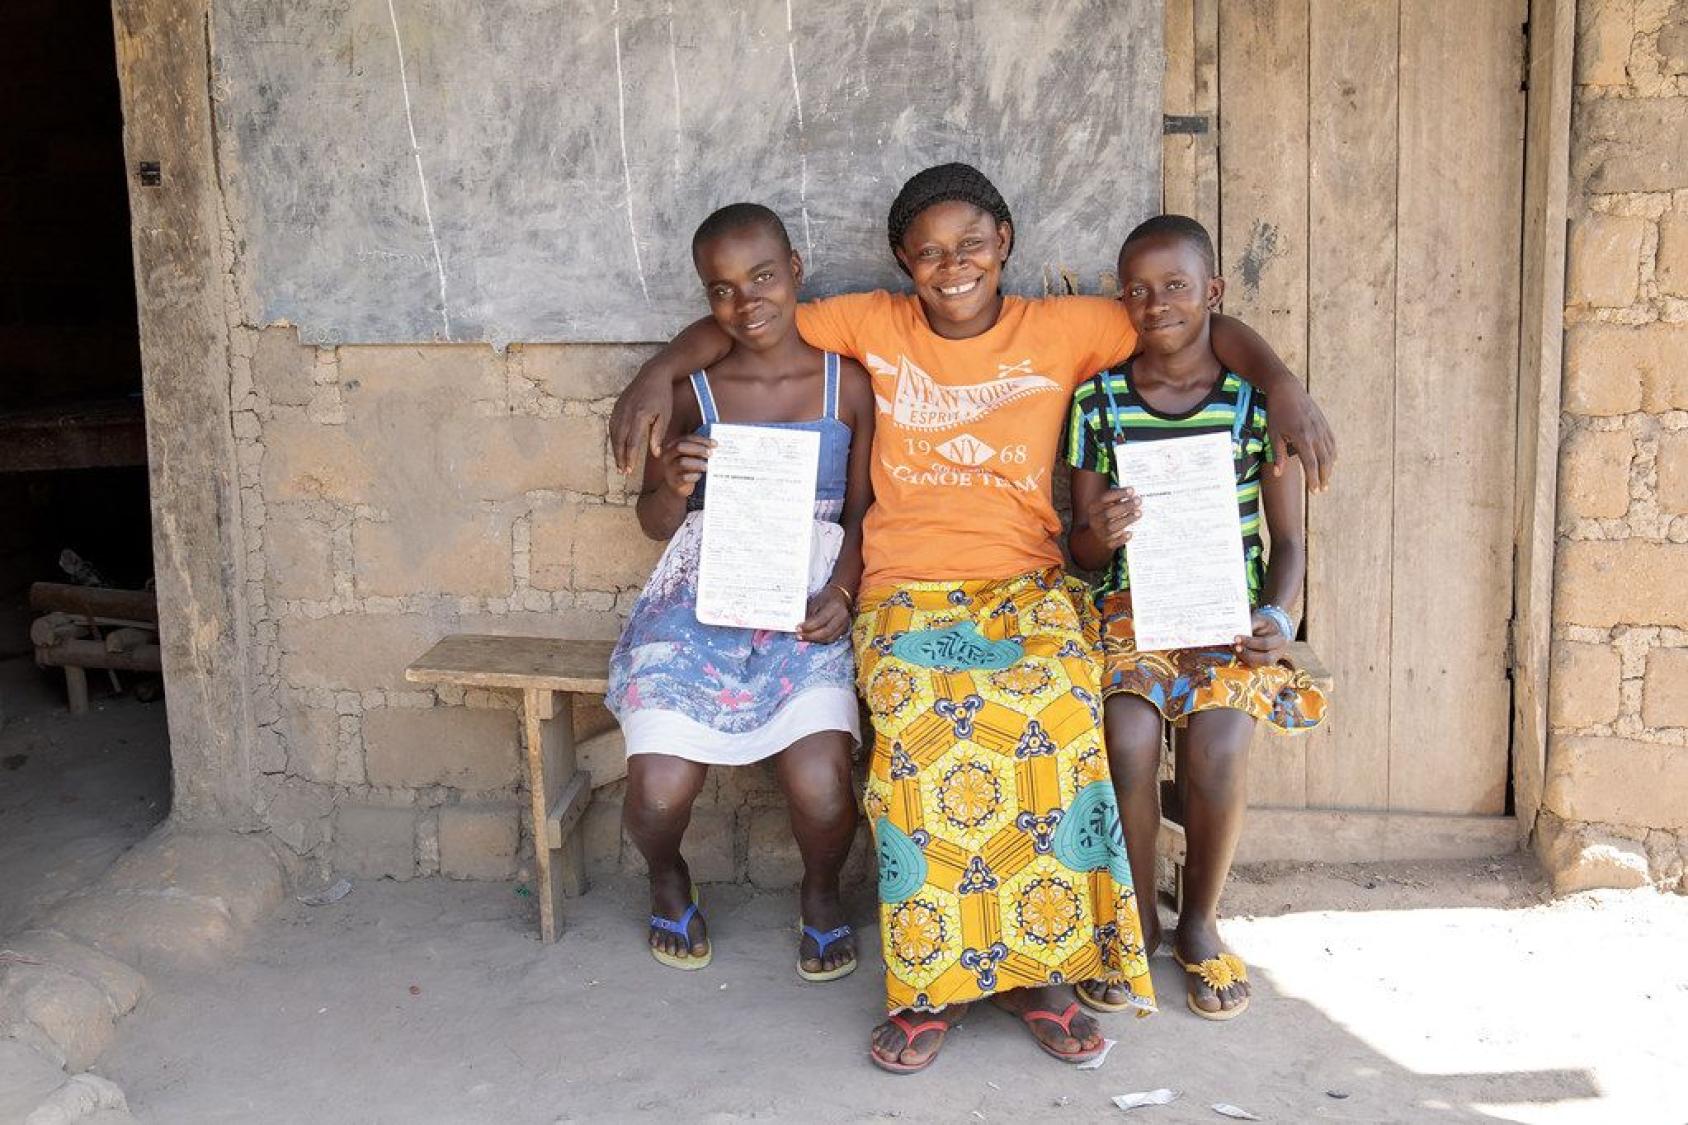 Dos niñas de Camerún se sientan con su madre en un banco frente a una casa, mostrando con orgullo sus certificados de nacimiento recién expedidos, y sonriendo a la cámara.